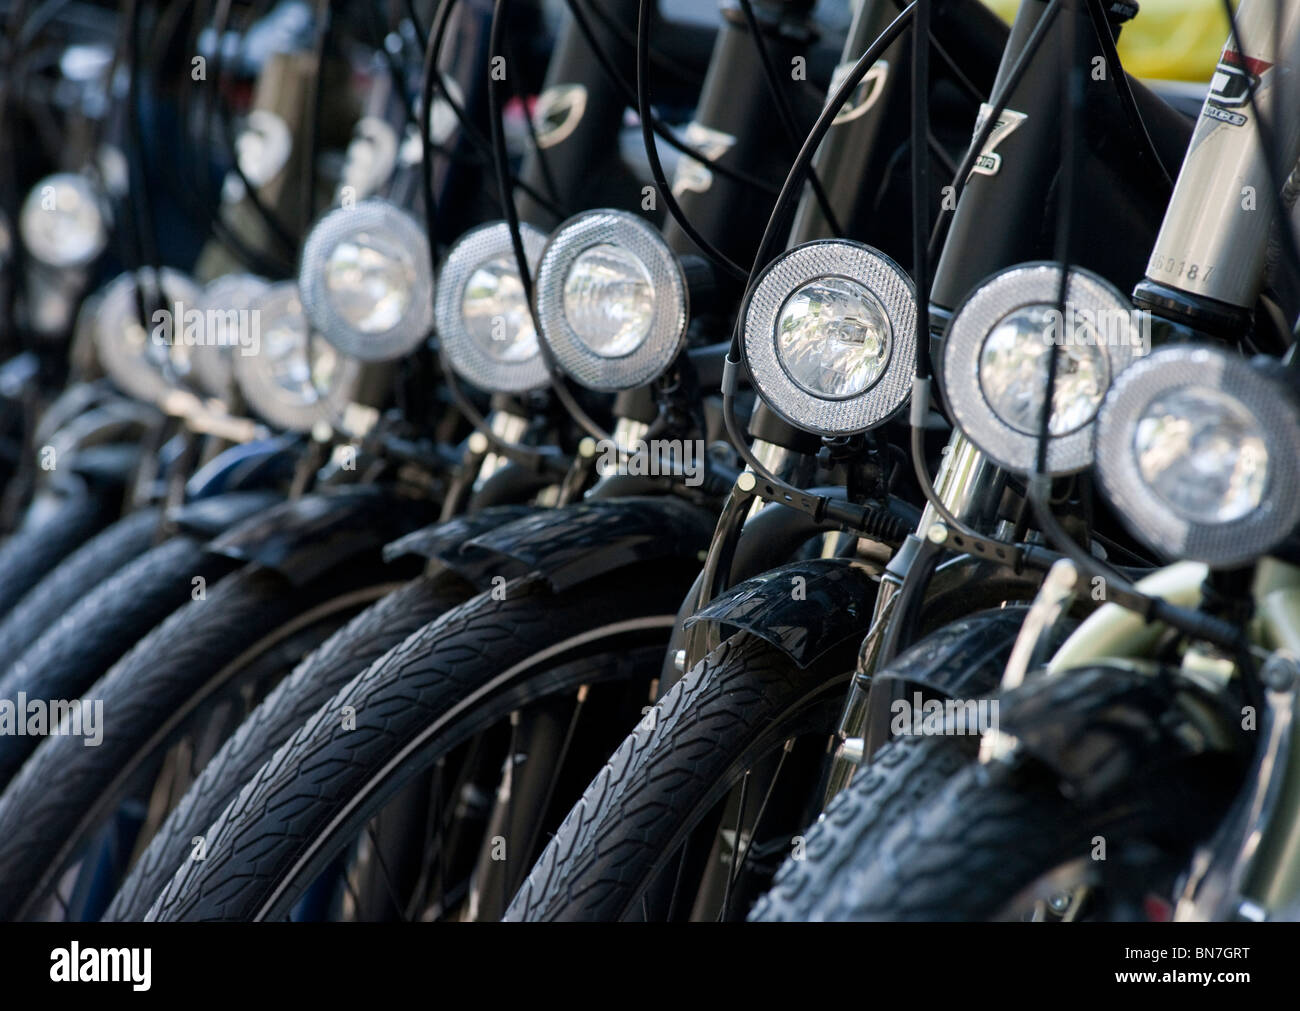 De nombreux nouveaux vélos à vendre à l'extérieur de l'atelier à Berlin Allemagne Banque D'Images